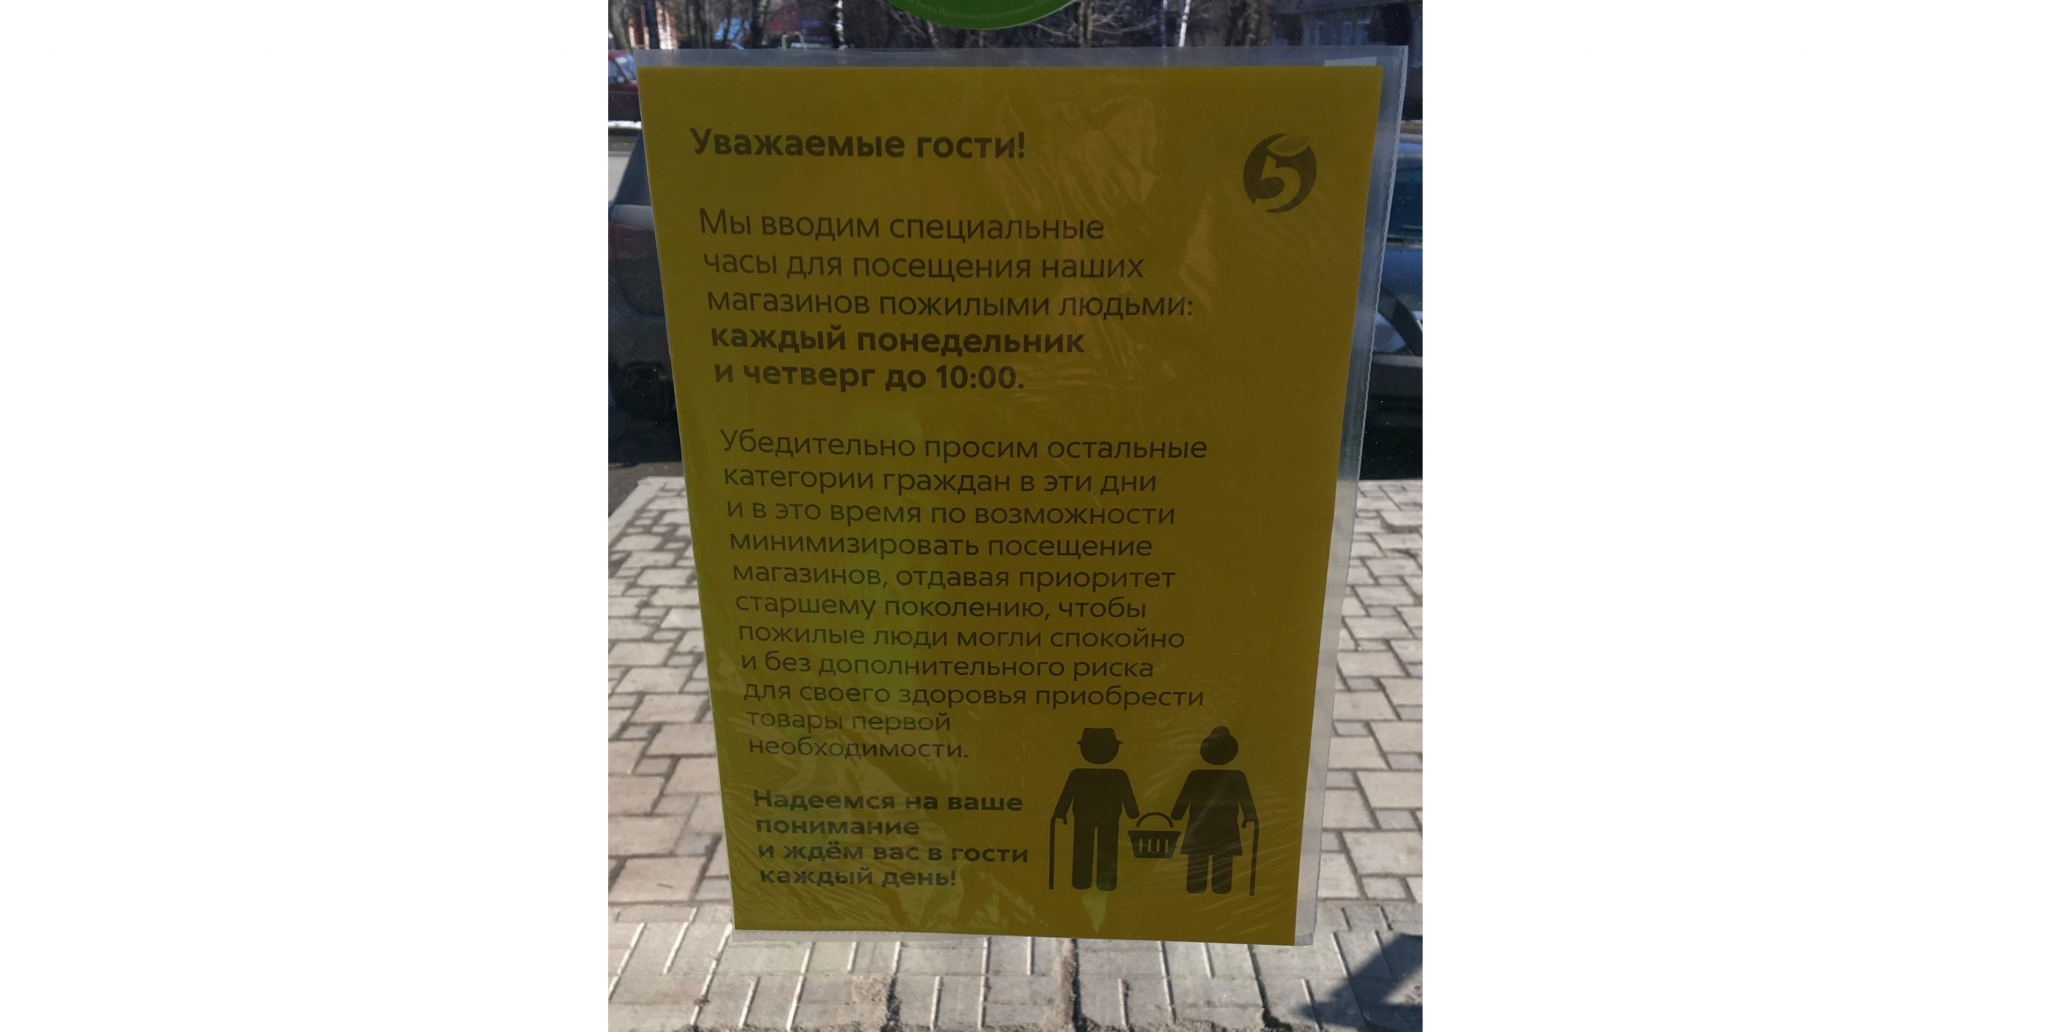 Пенсионерам в Кирове рекомендовали ходить в магазины по расписанию